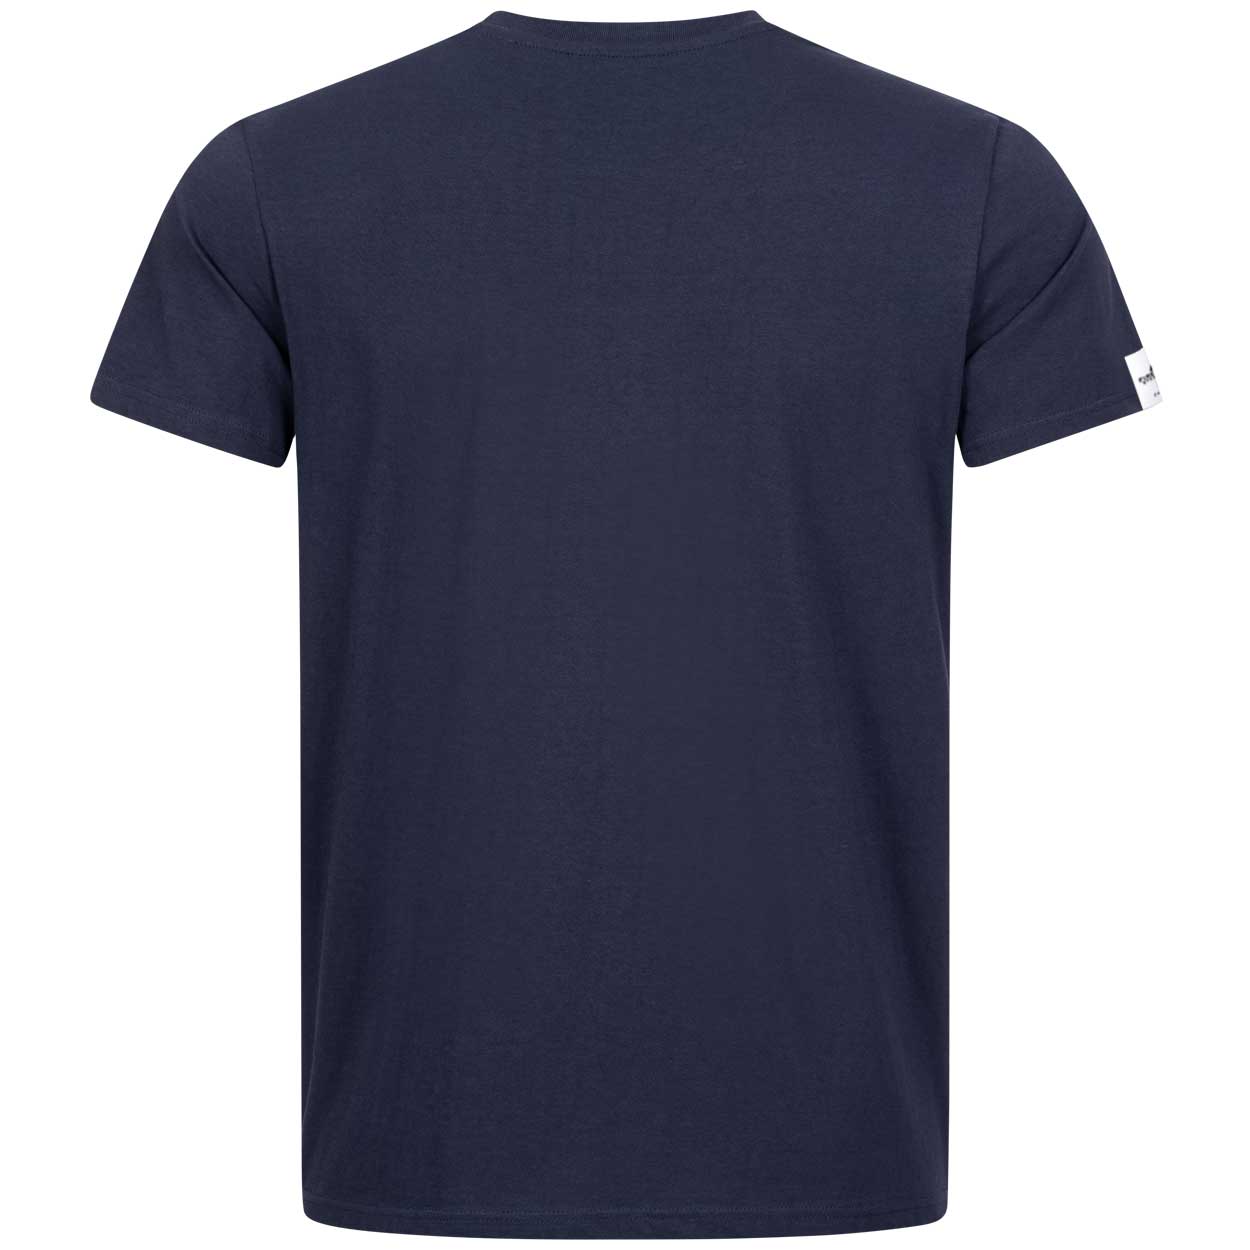 Angriffslustig® - 2023 Edition Herren T-Shirt